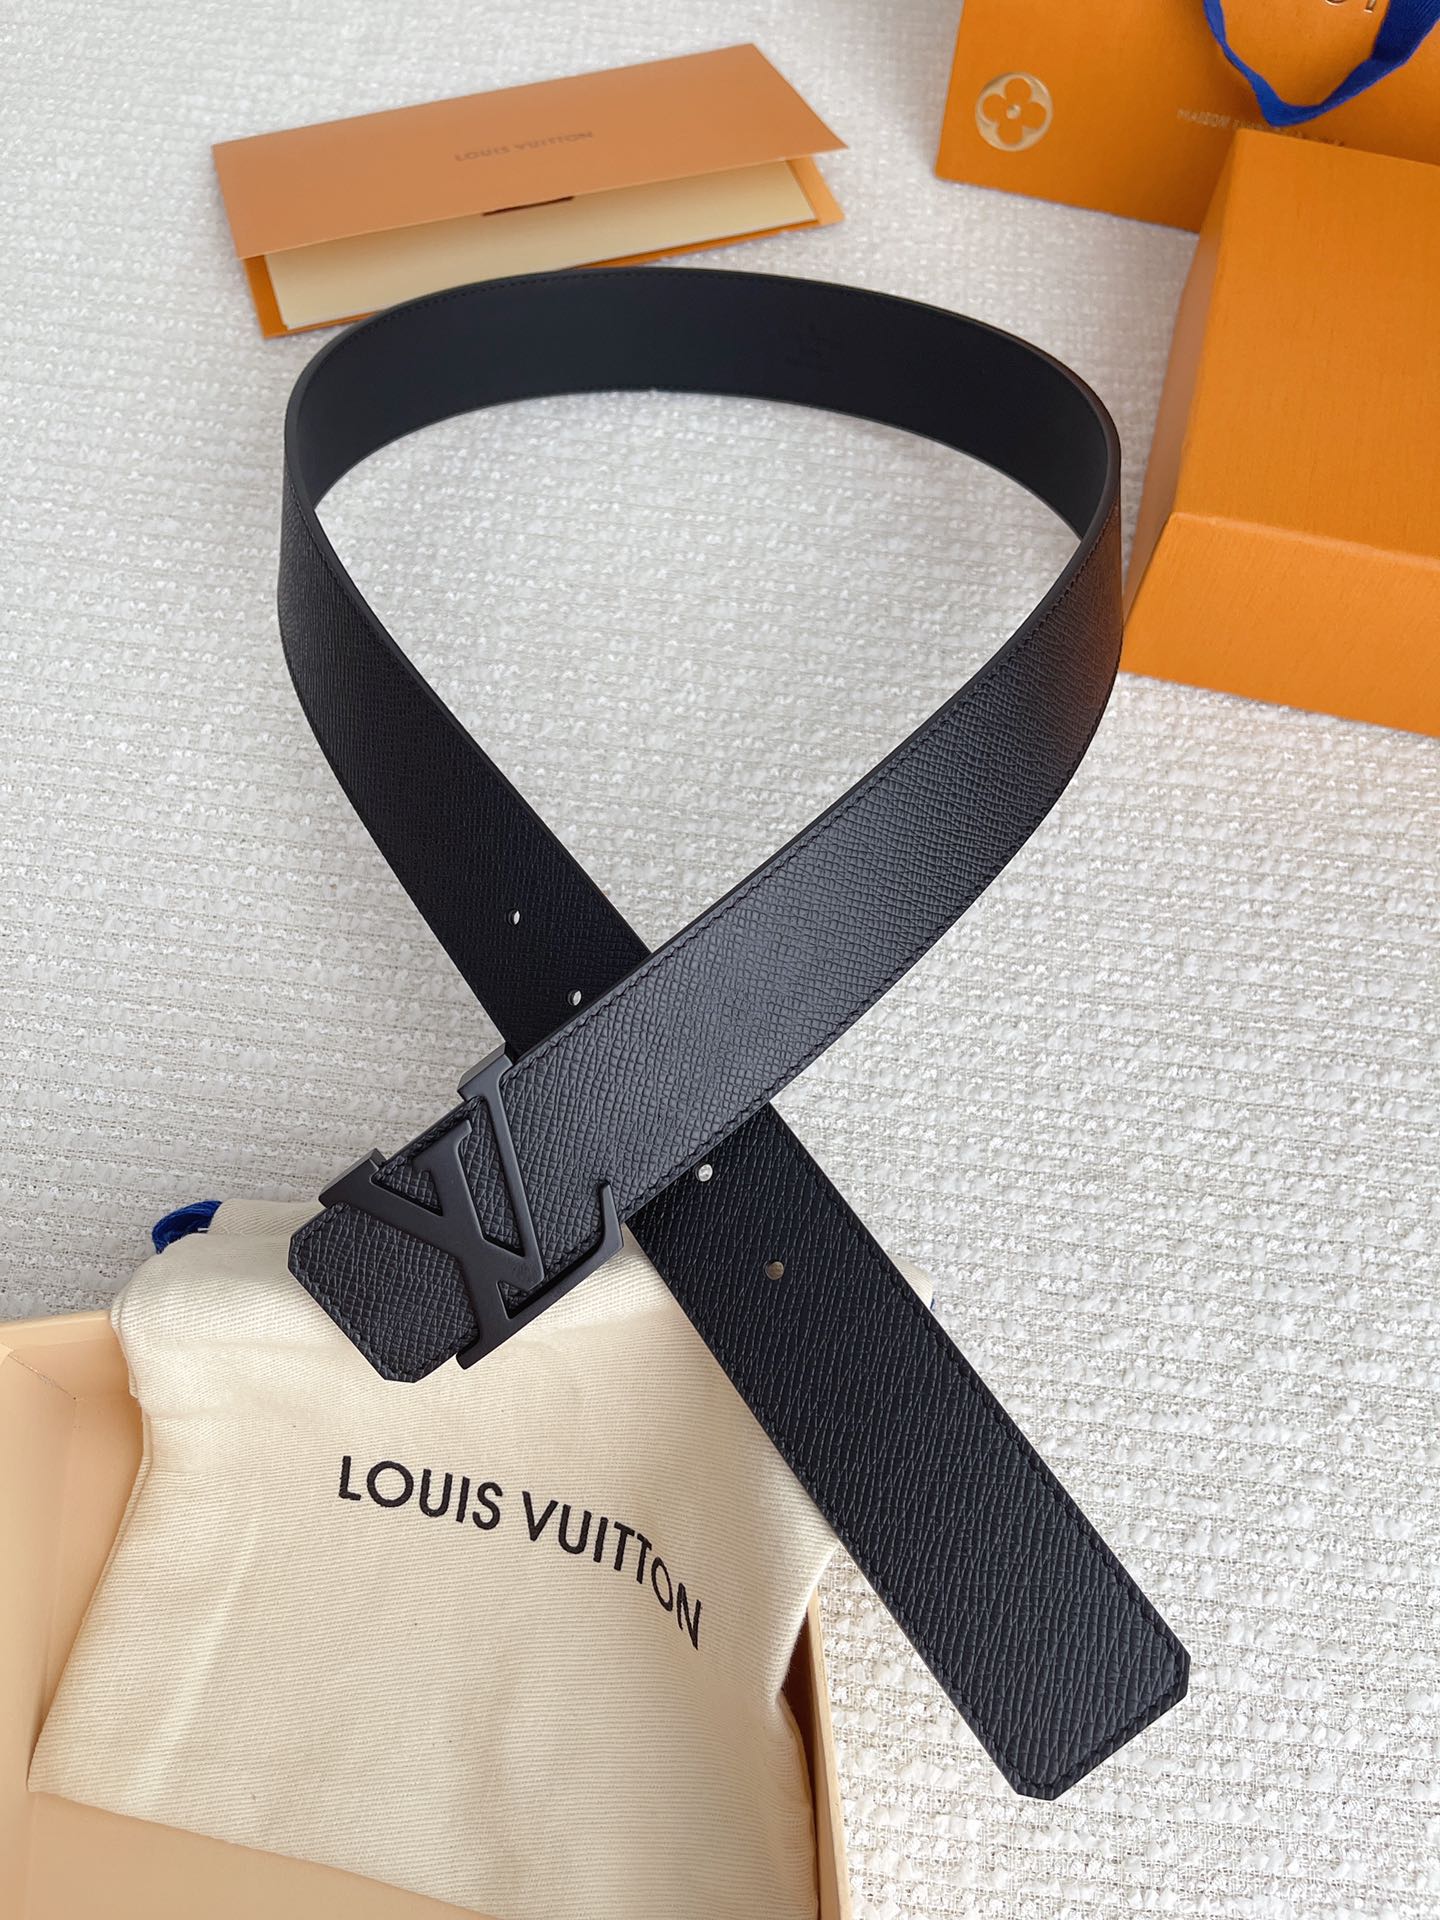 配全套包装礼盒L0UISVUITT0NLV男士专柜品质掌纹腰帶寬度40毫米配置精钢字母搭扣扣头可随意搭配